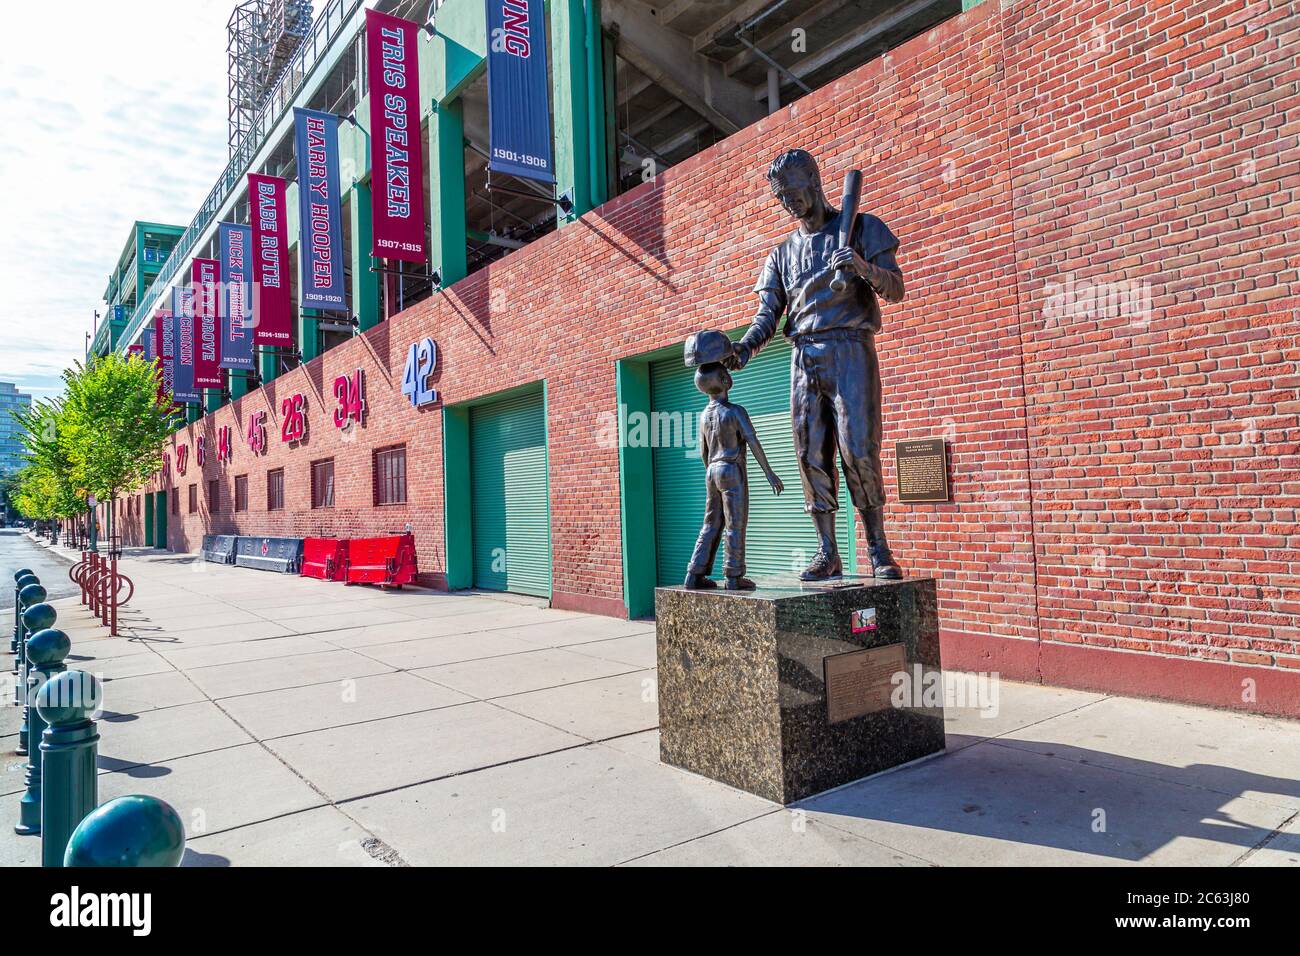 Il Fenway Park è un parco di baseball situato a Boston, Massachusetts, vicino a Kenmore Square. Dal 1912 è la casa dei Boston Red Sox Foto Stock